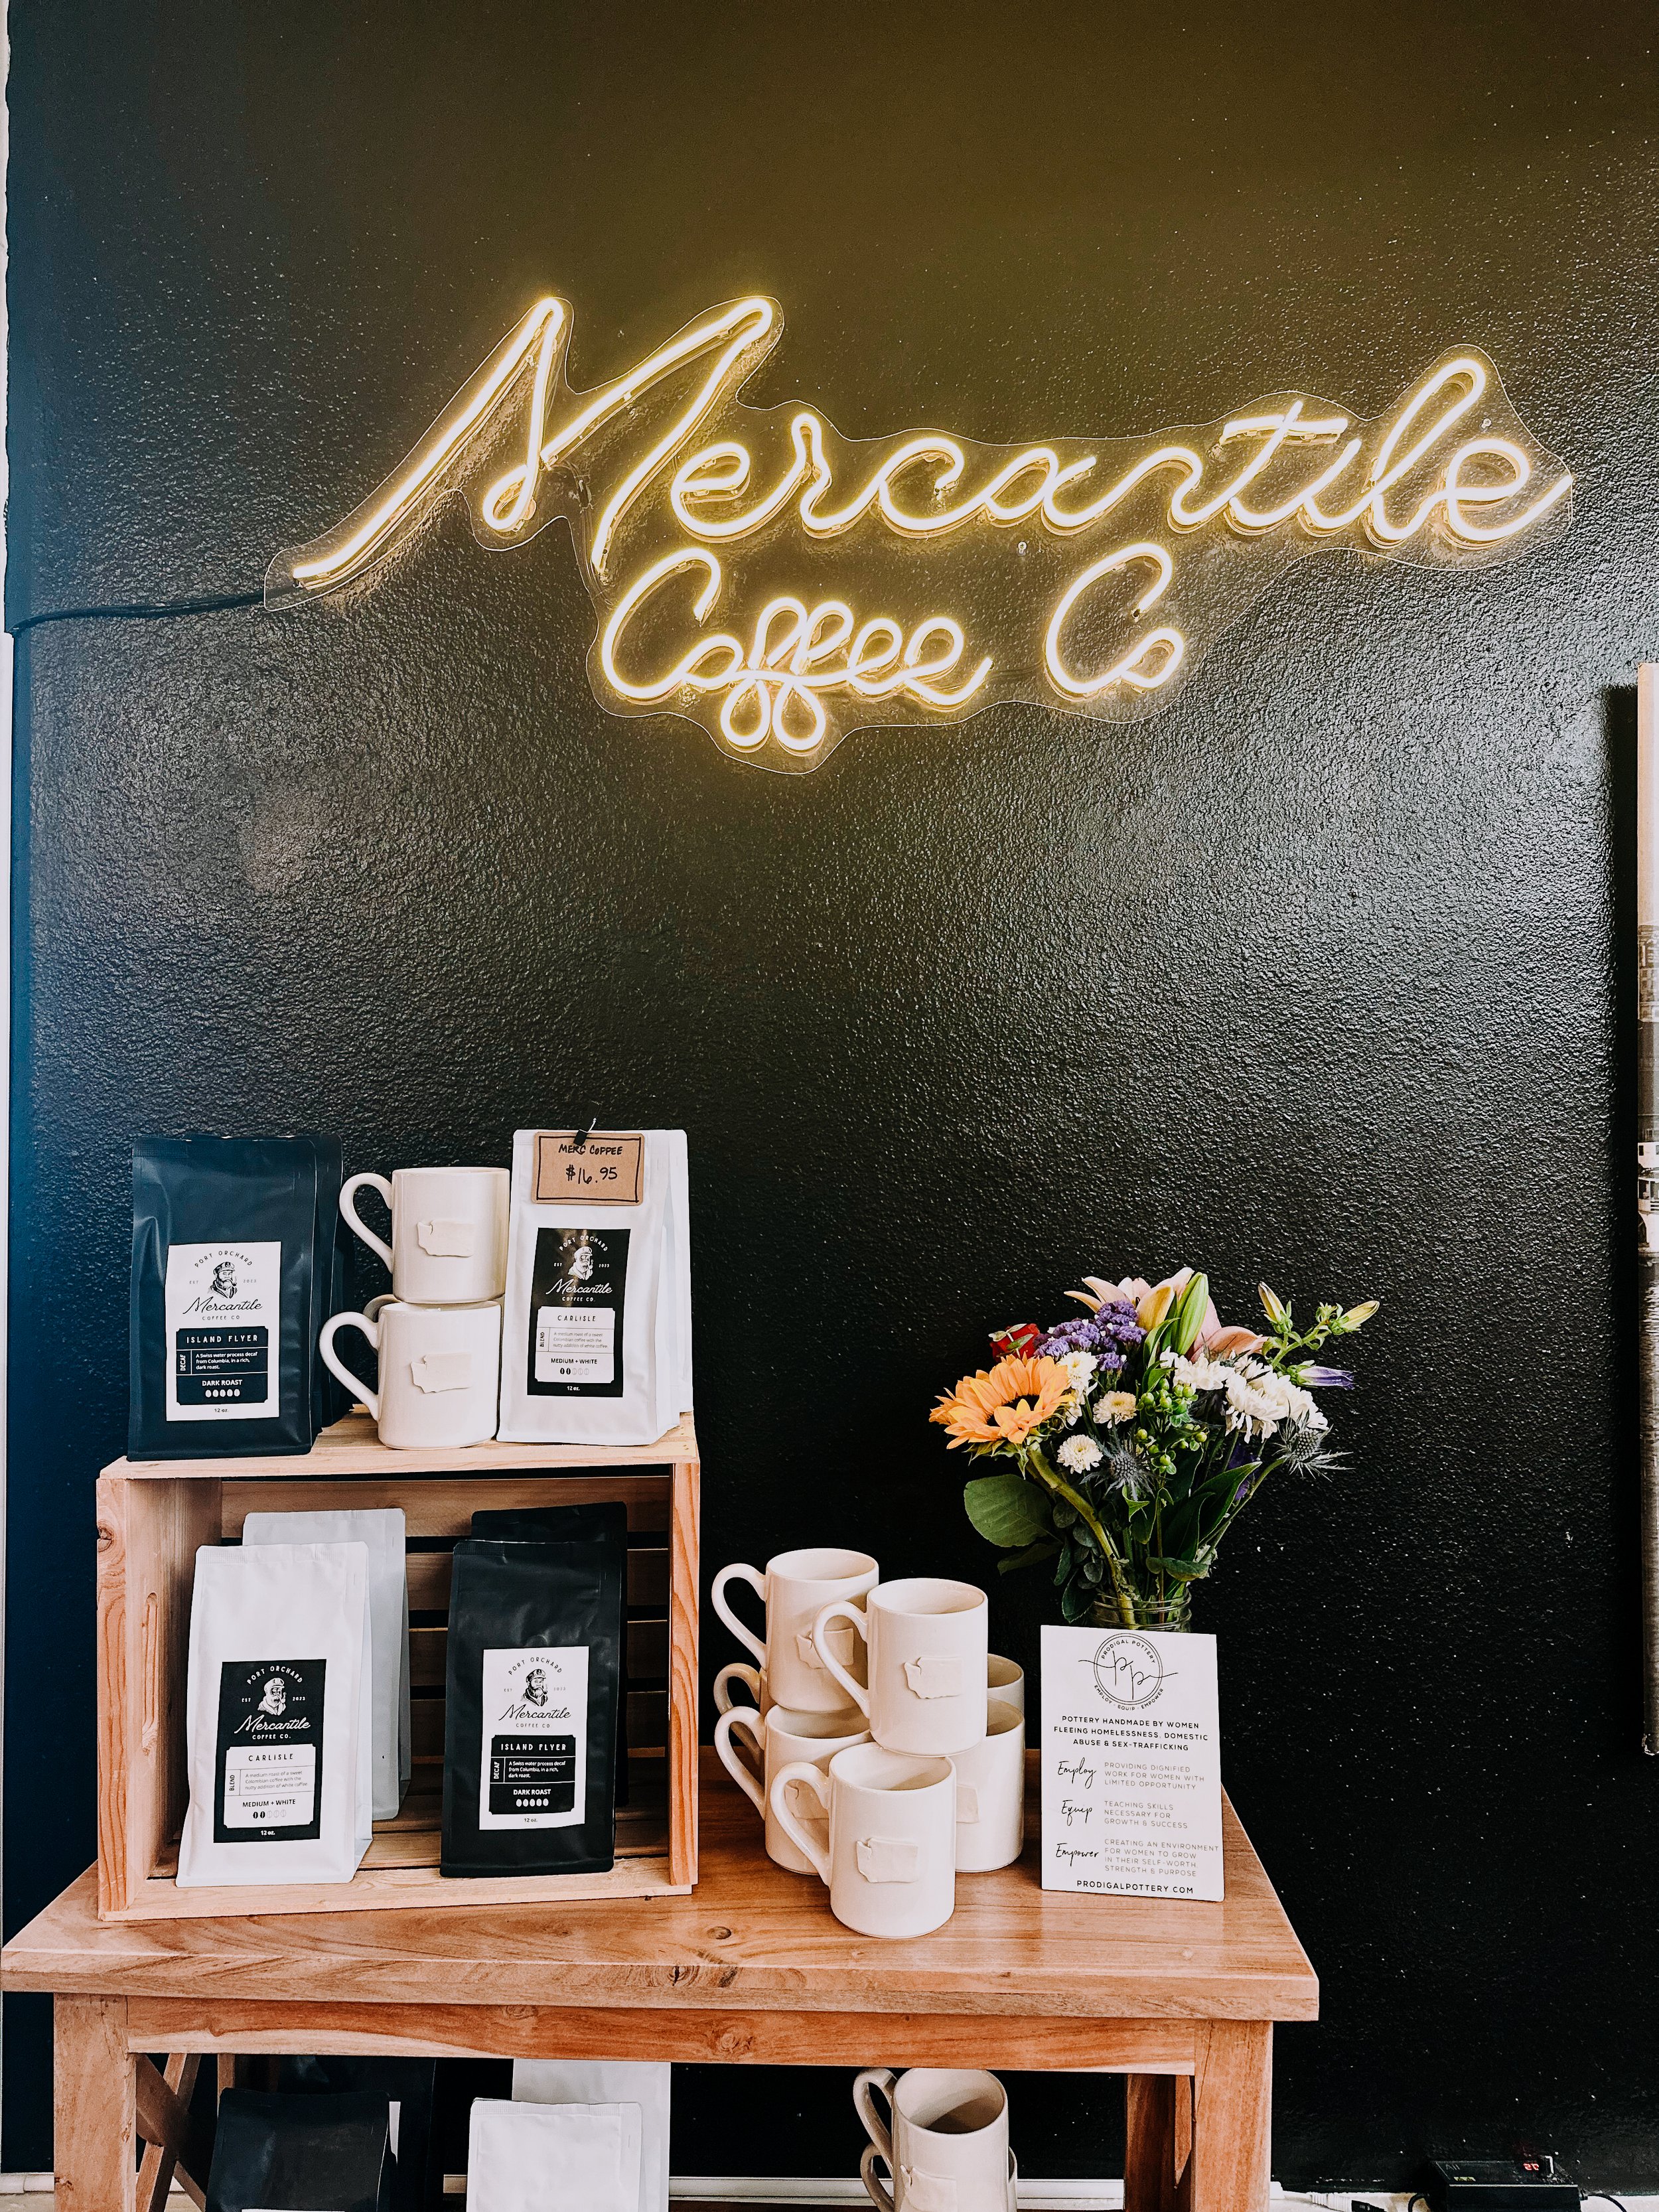 Mercantile Coffee Co.